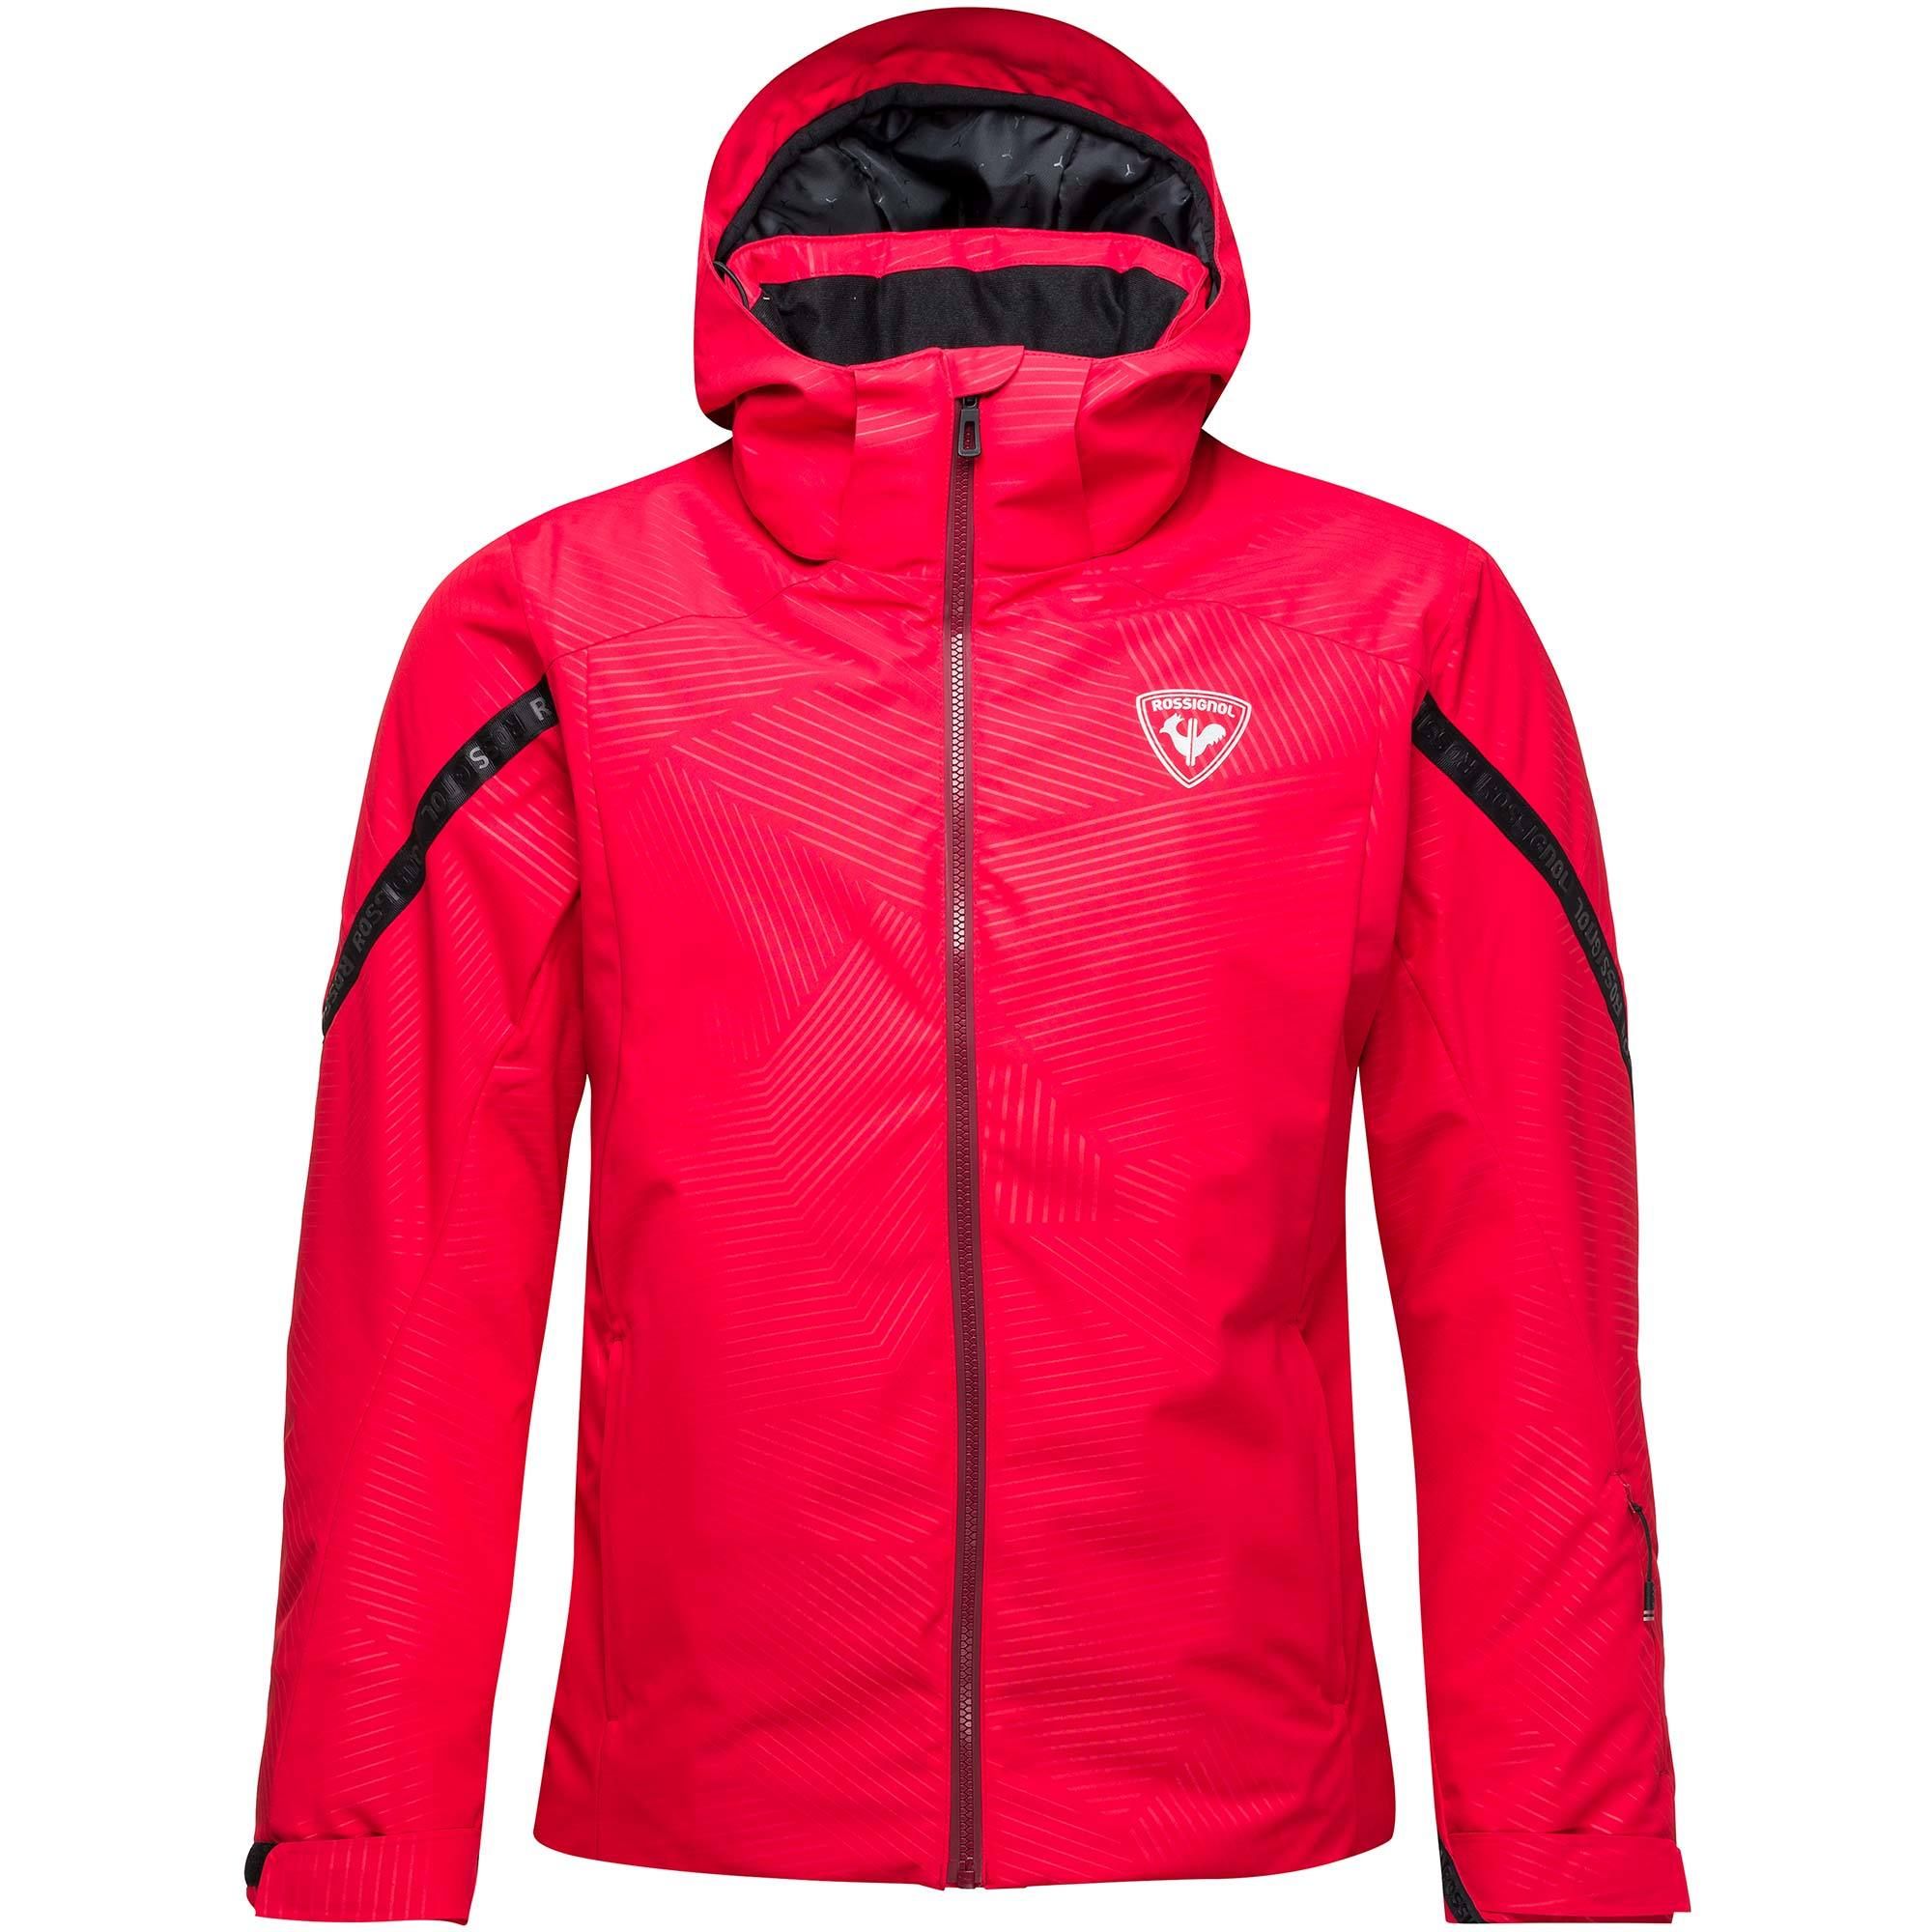 Rossignol Mens Gradian Ski Jacket – Medium – Red